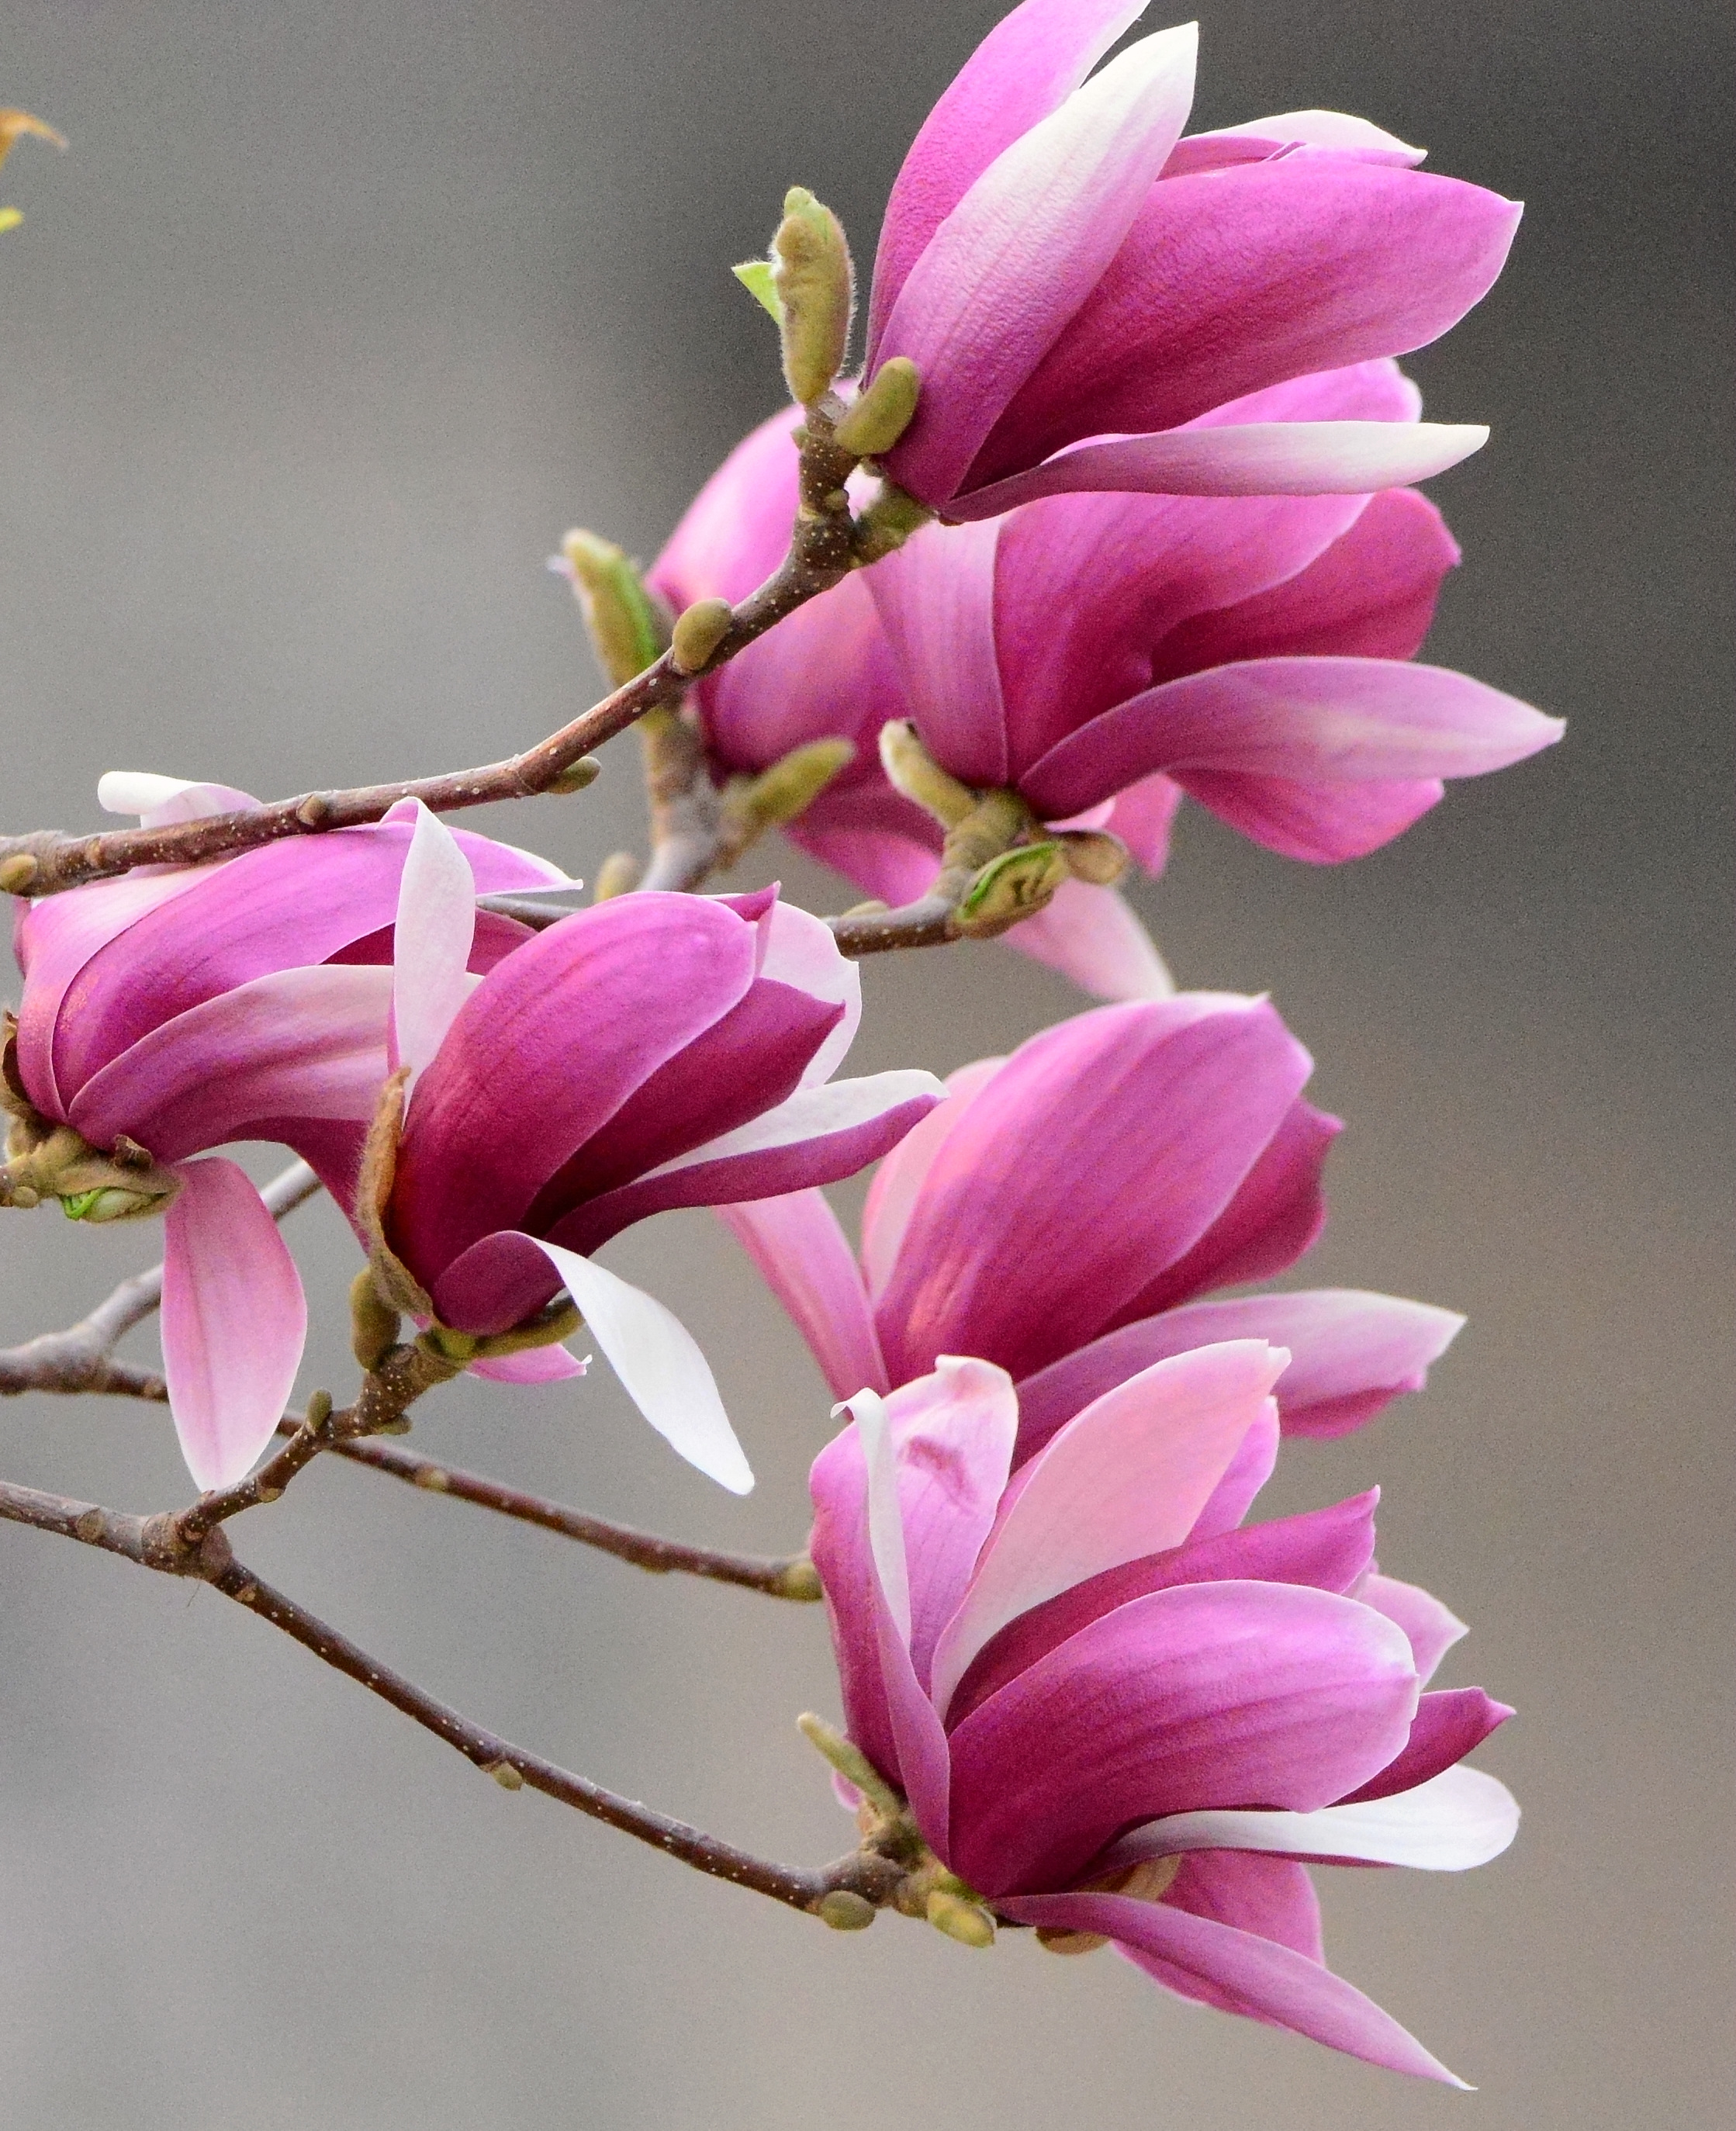 紫玉兰说到樱花大家是不是都会想到日本樱花,没错,樱花是属于日本的